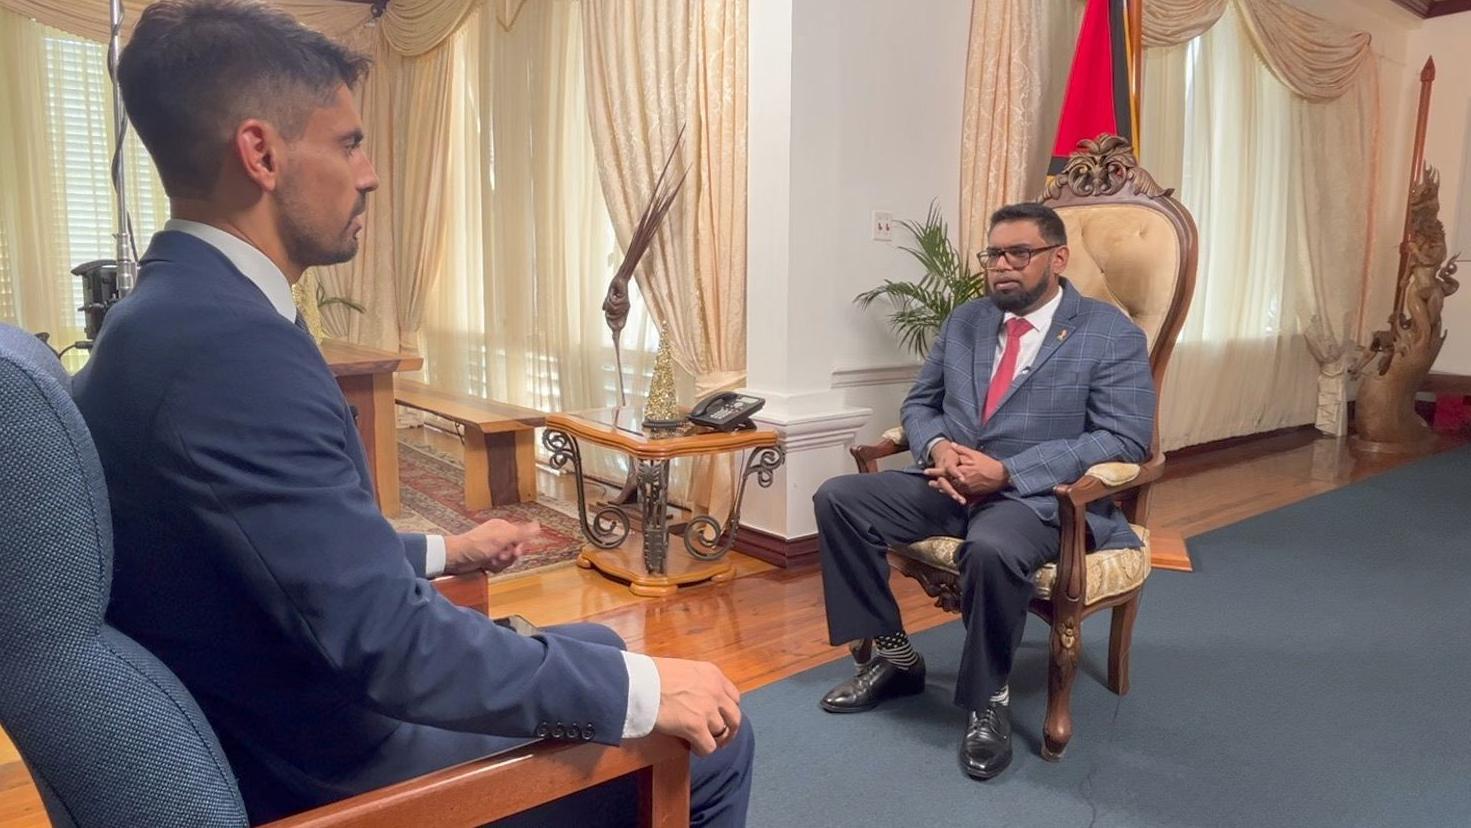 Leandro Prazeres, periodista de BBC Brasil, en entrevista con el presidente de Guyana.